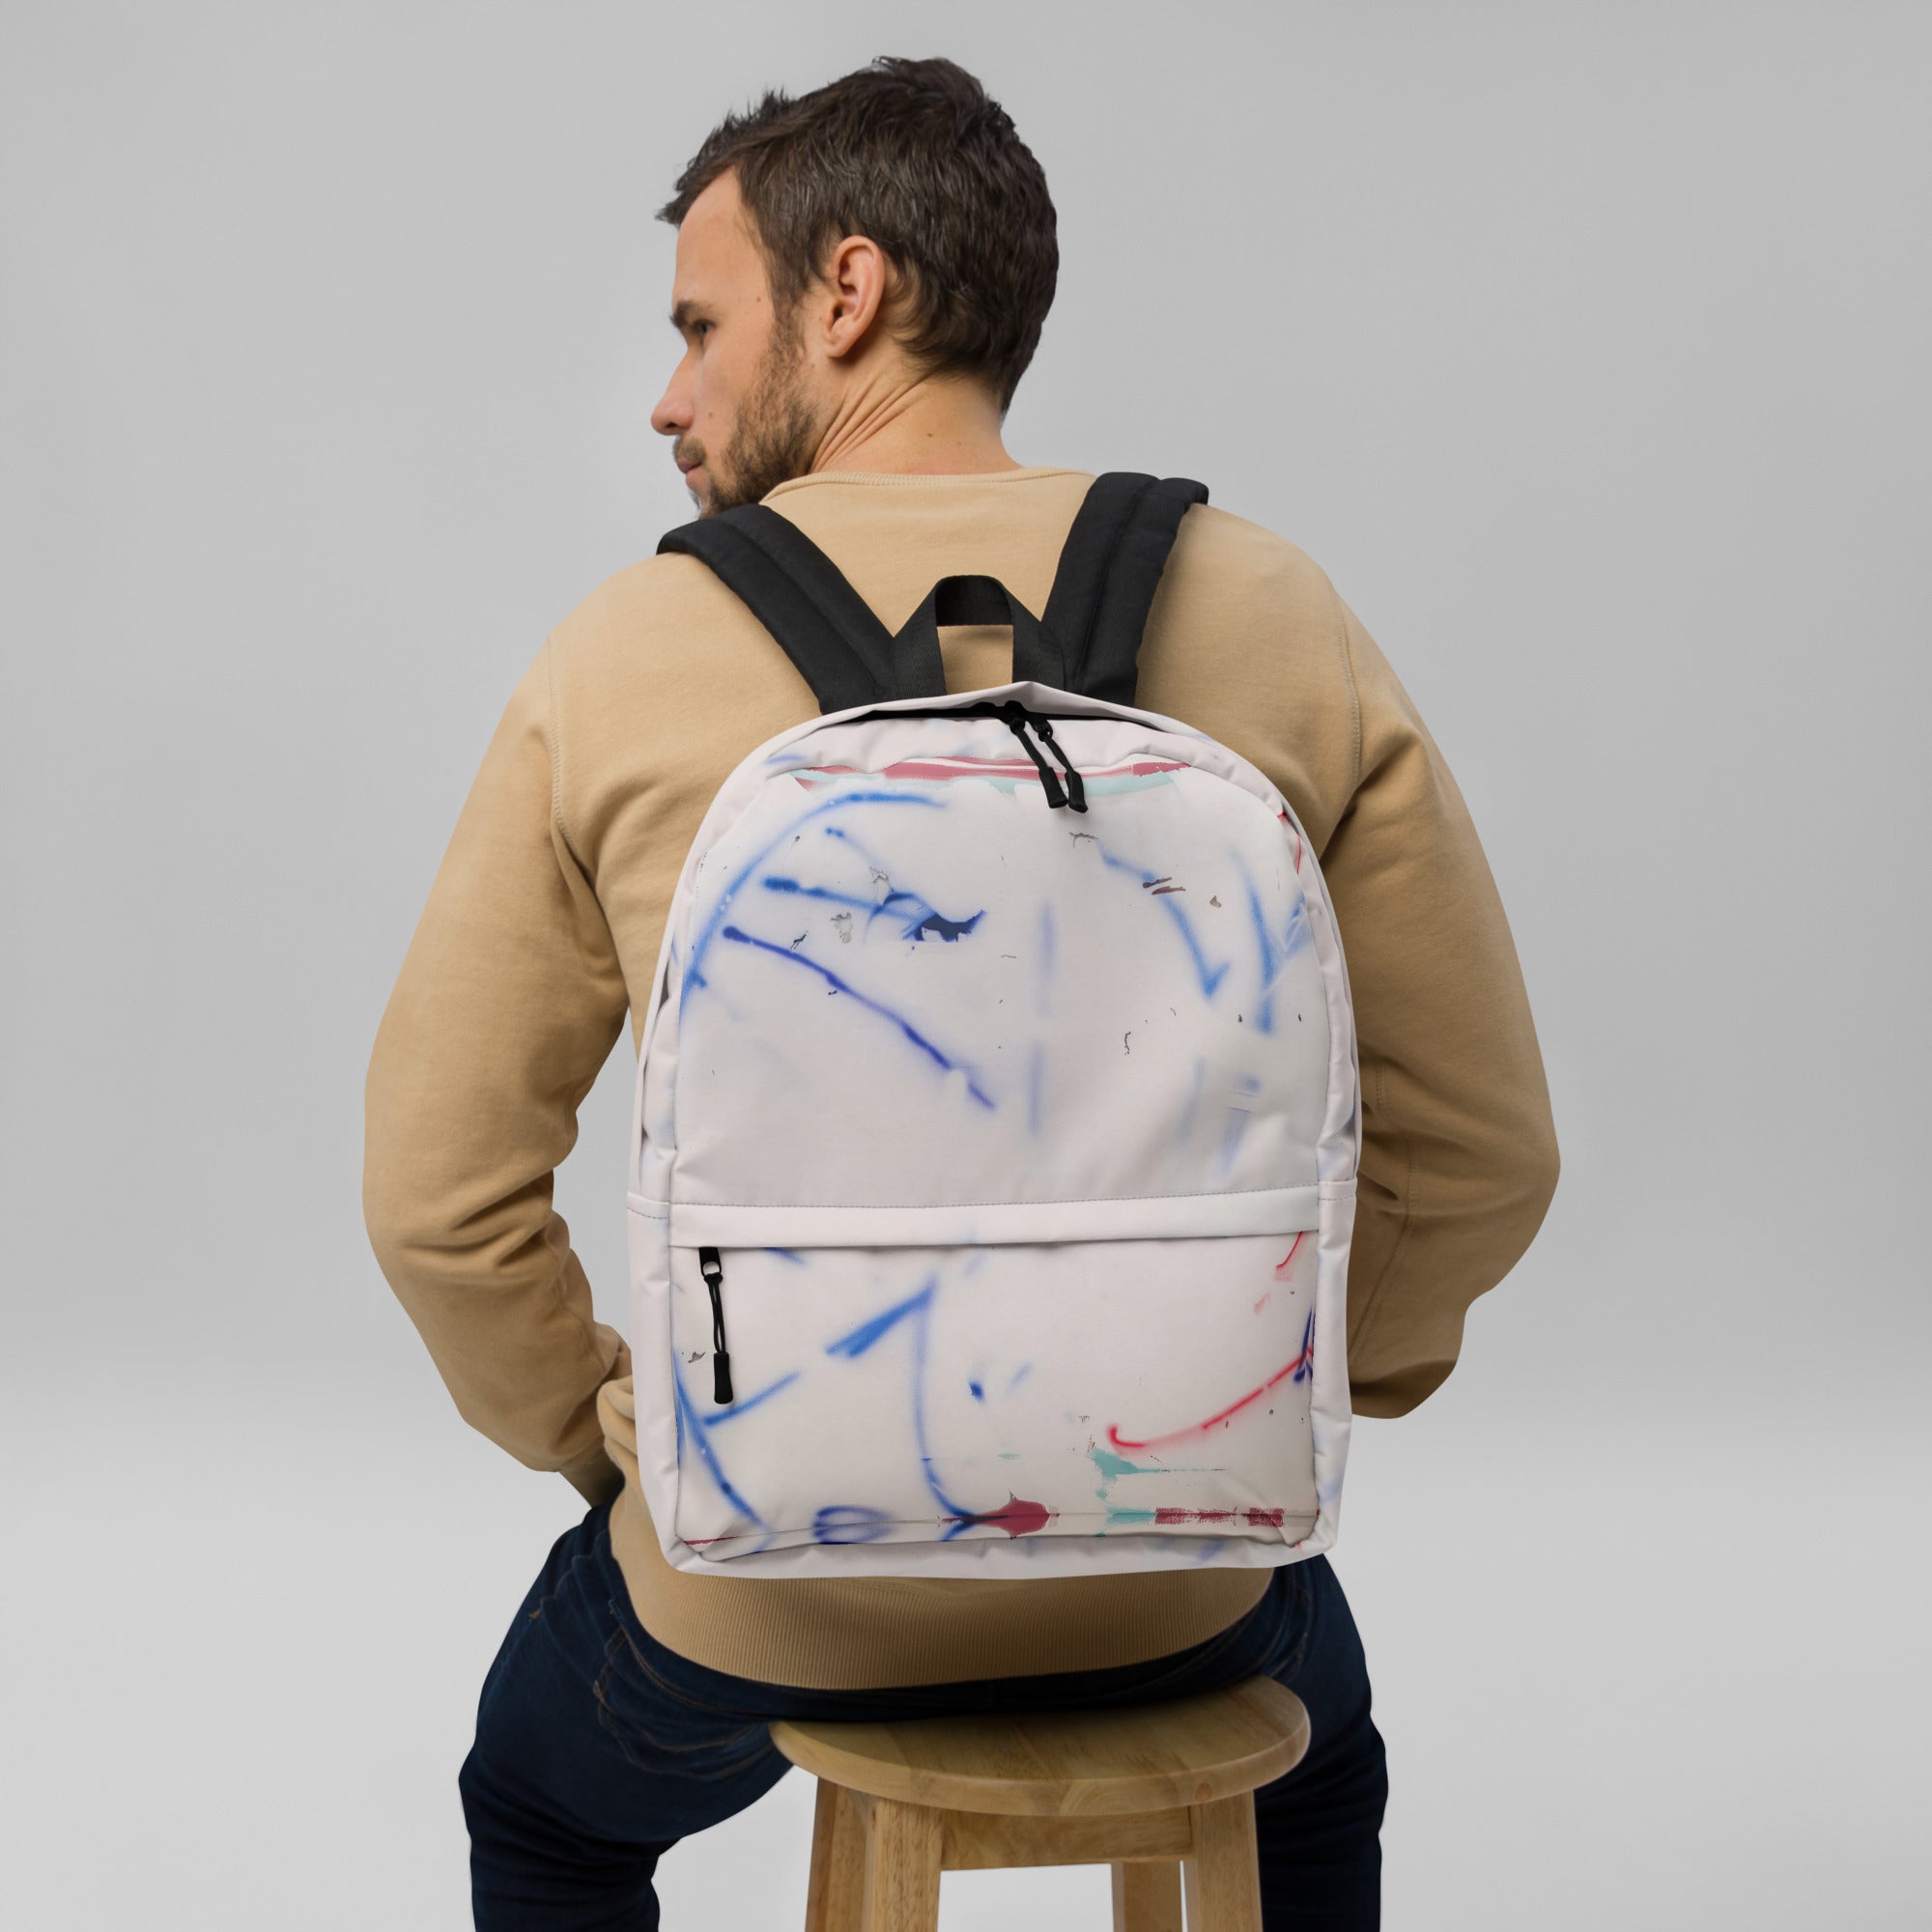 Keed® Backpack